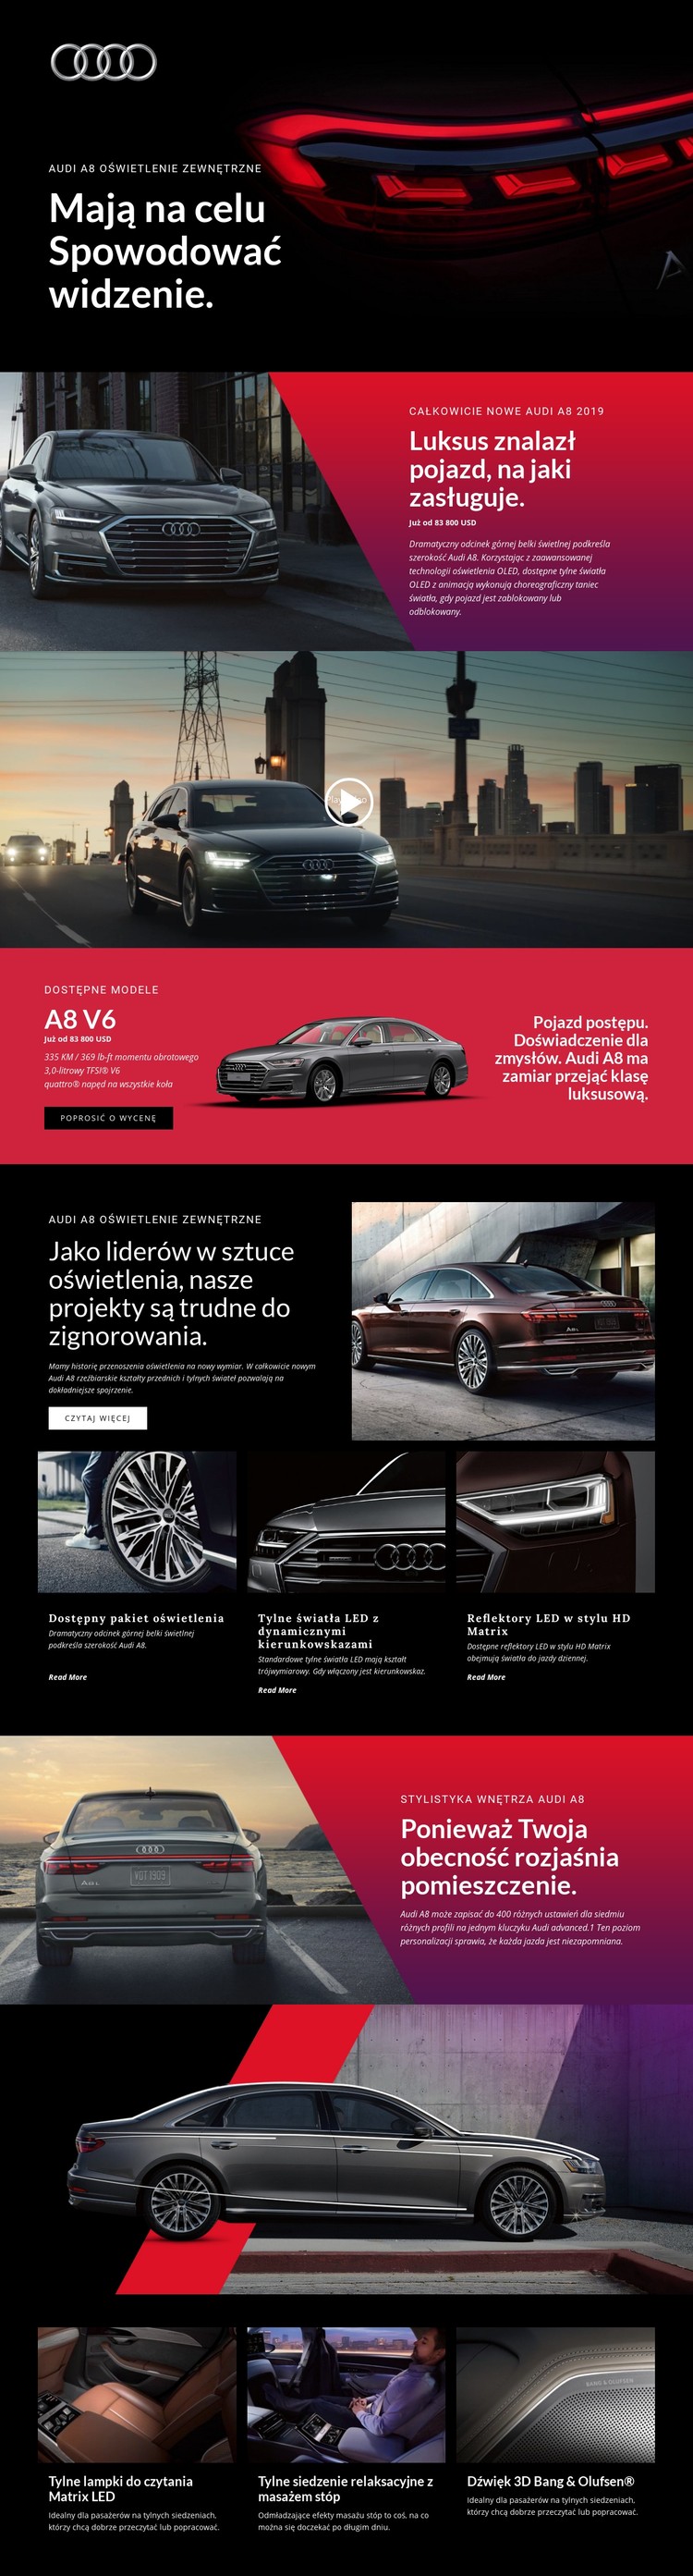 Luksusowe samochody Audi Szablon CSS